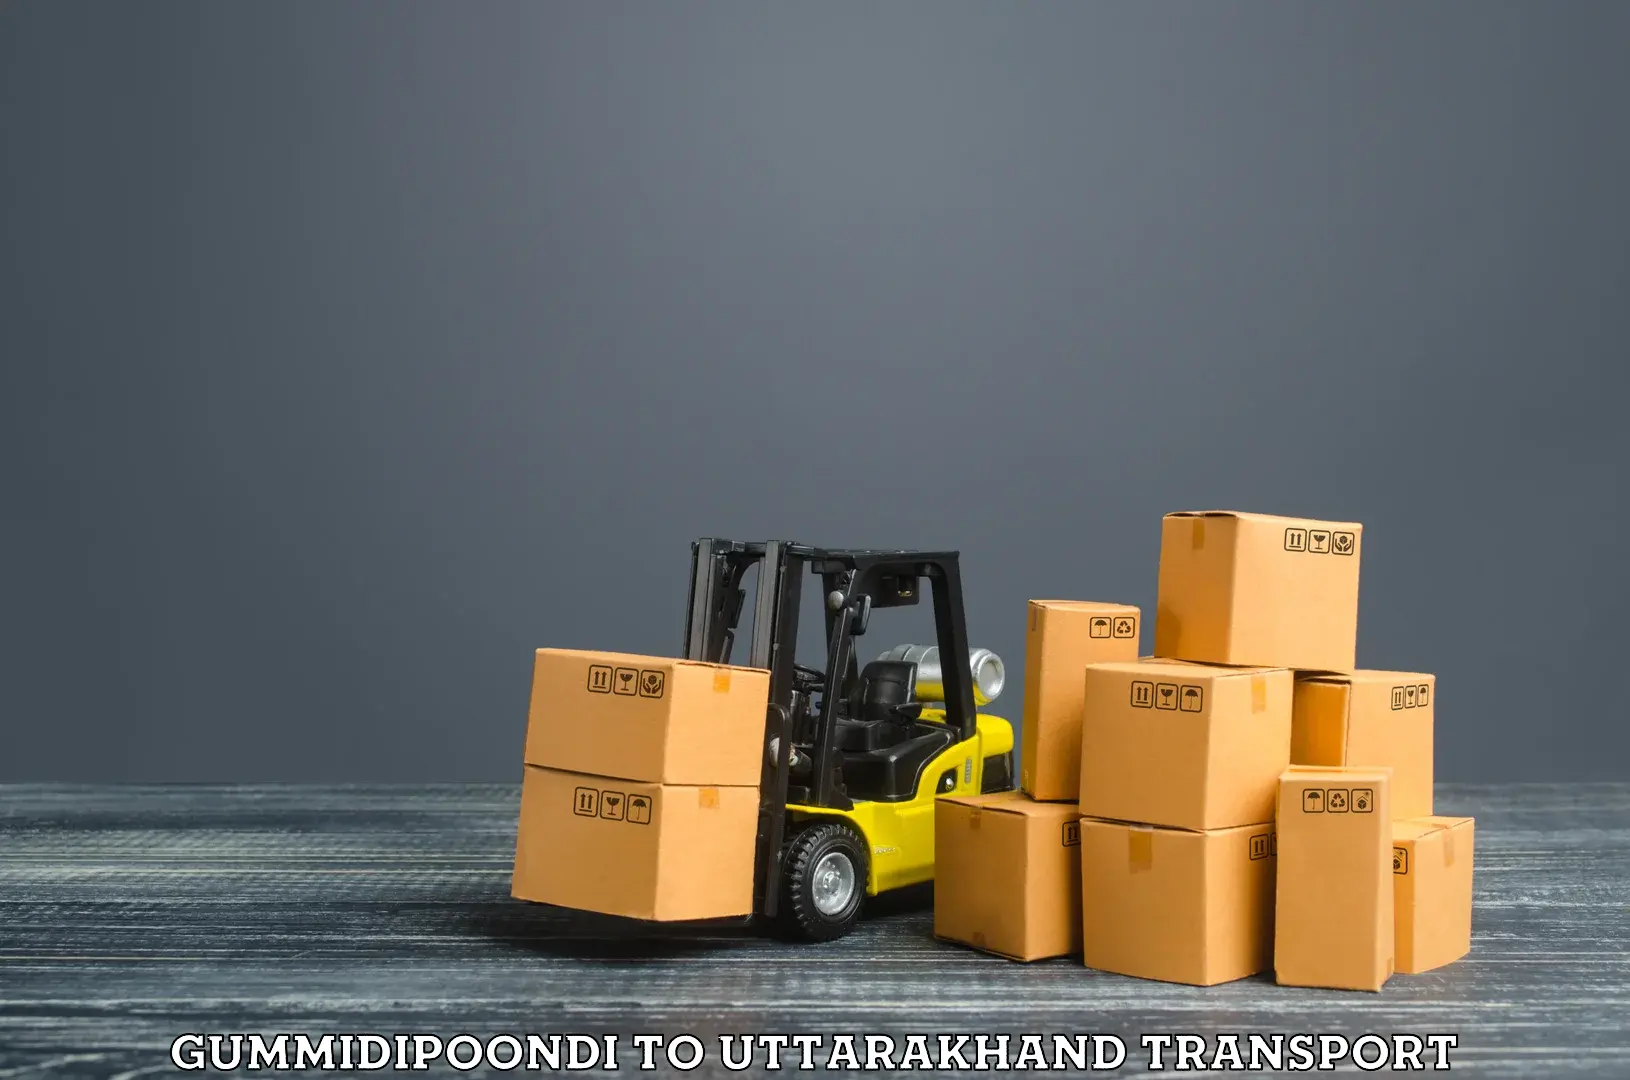 Cargo transportation services Gummidipoondi to IIT Roorkee